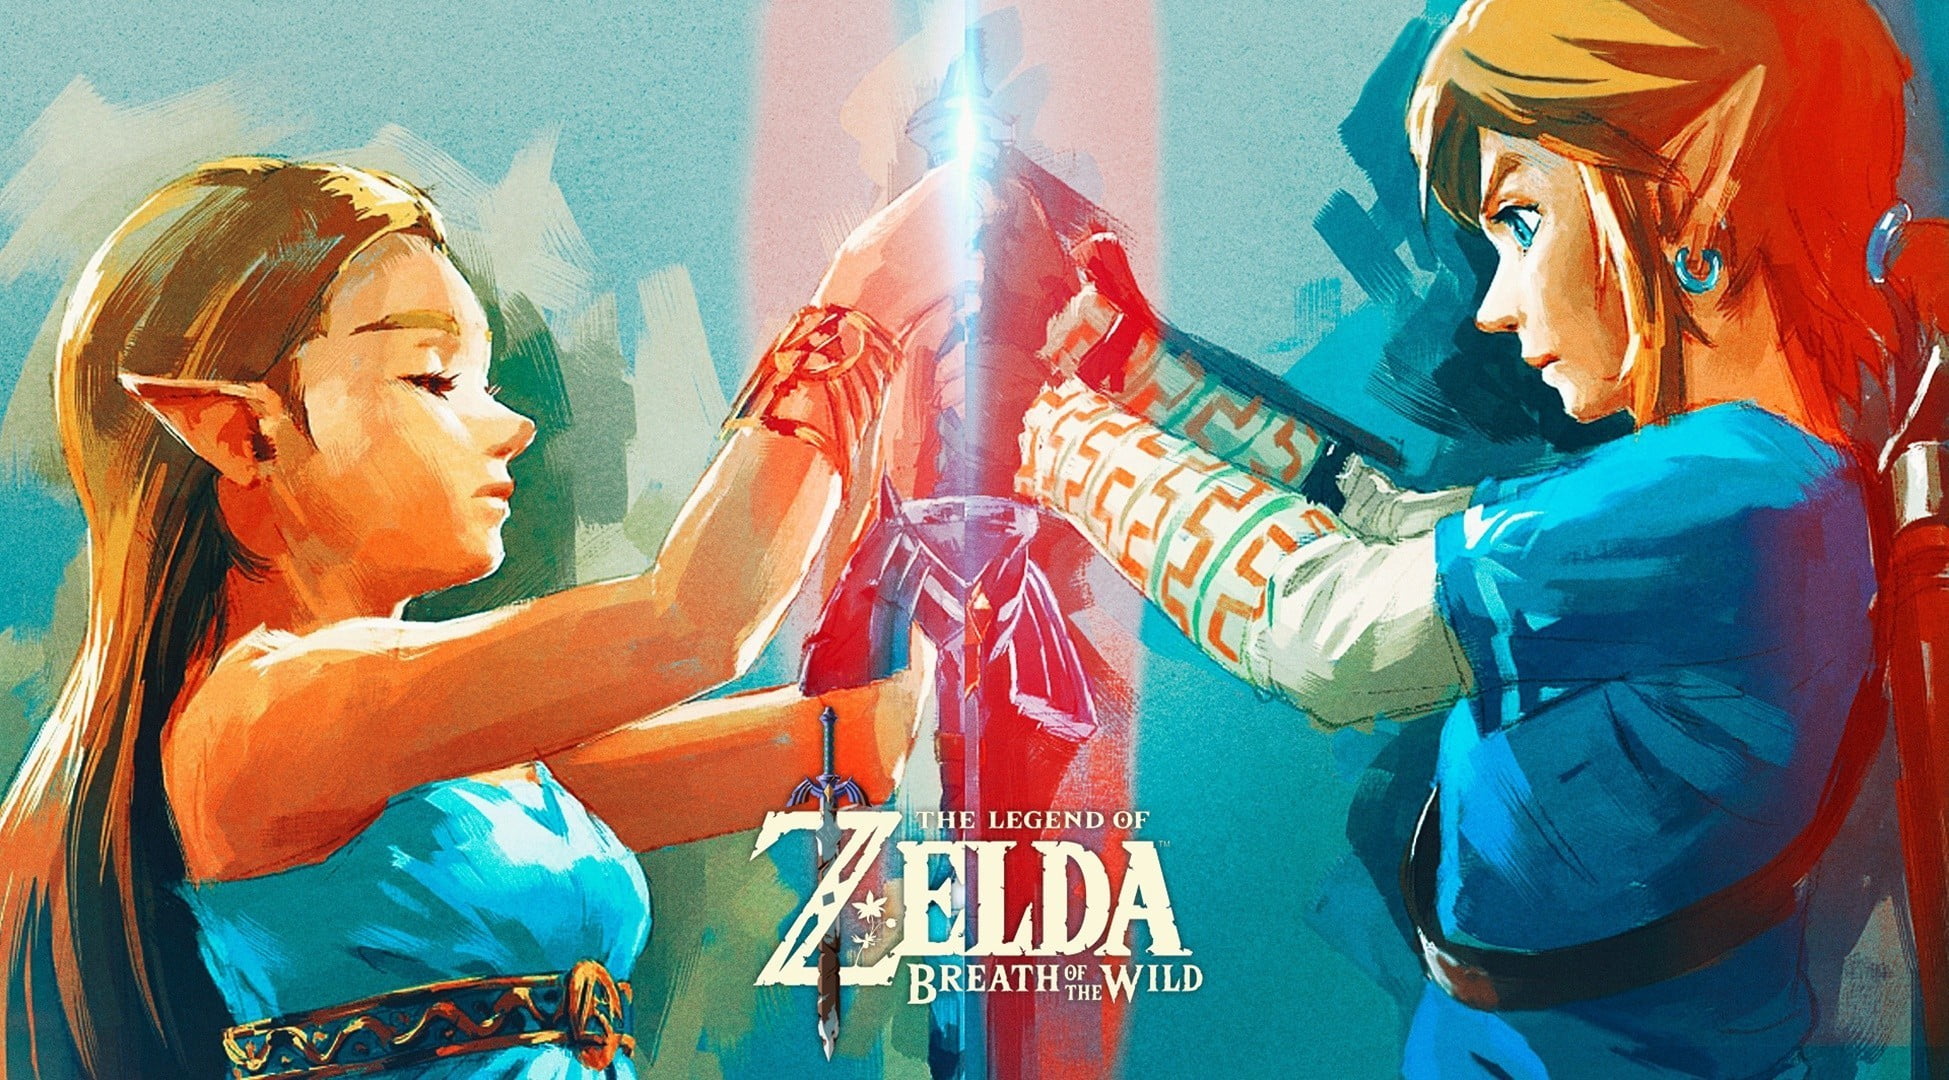 Anime Character Wallpaper Botw The Legend Of Zelda Breath